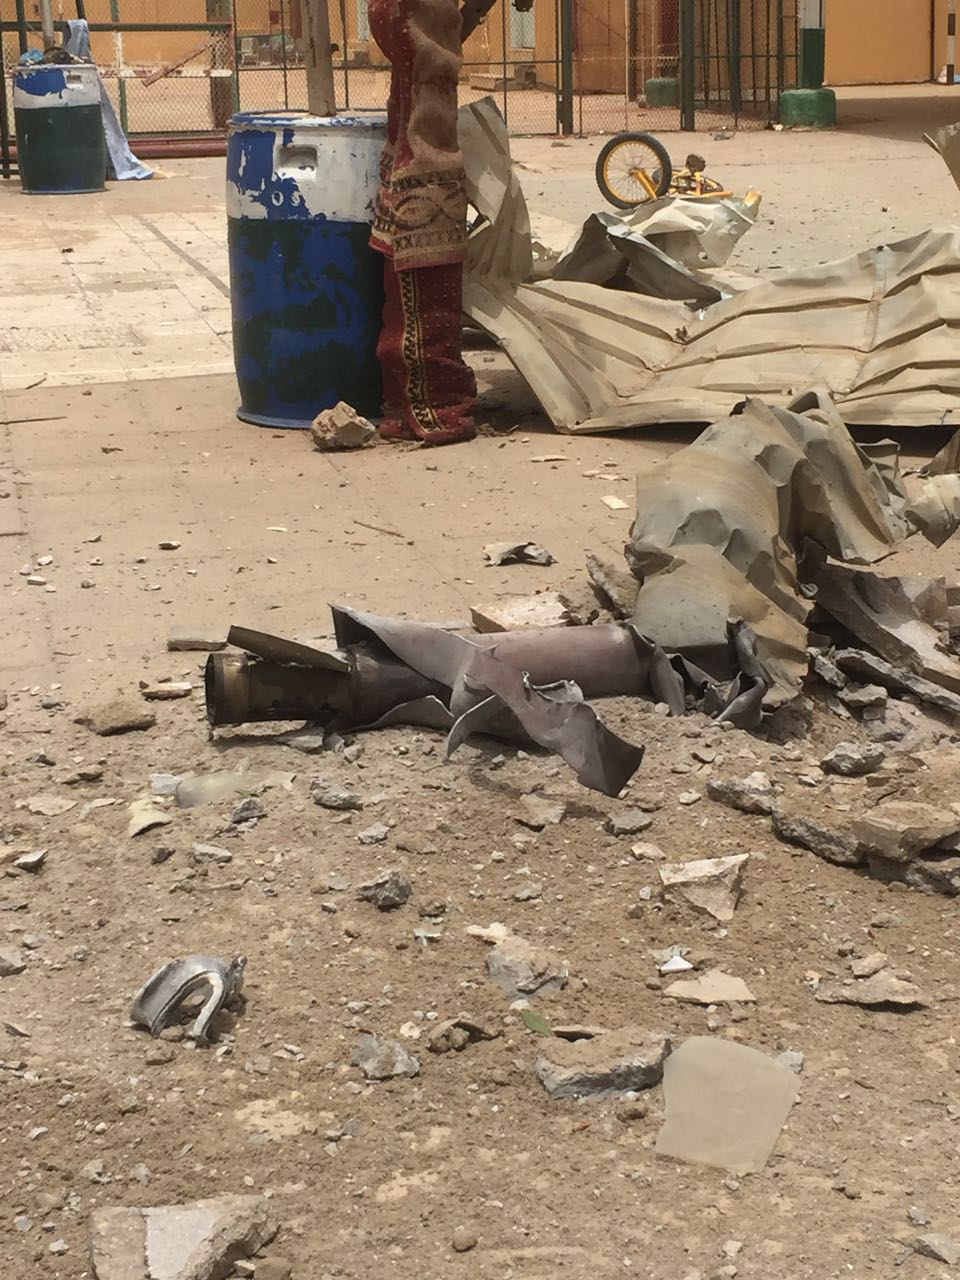 أهالي صامطة: لا نخشى مقذوفات الحوثيّ البائسة ونعتز بقواتنا المسلحة - المواطن